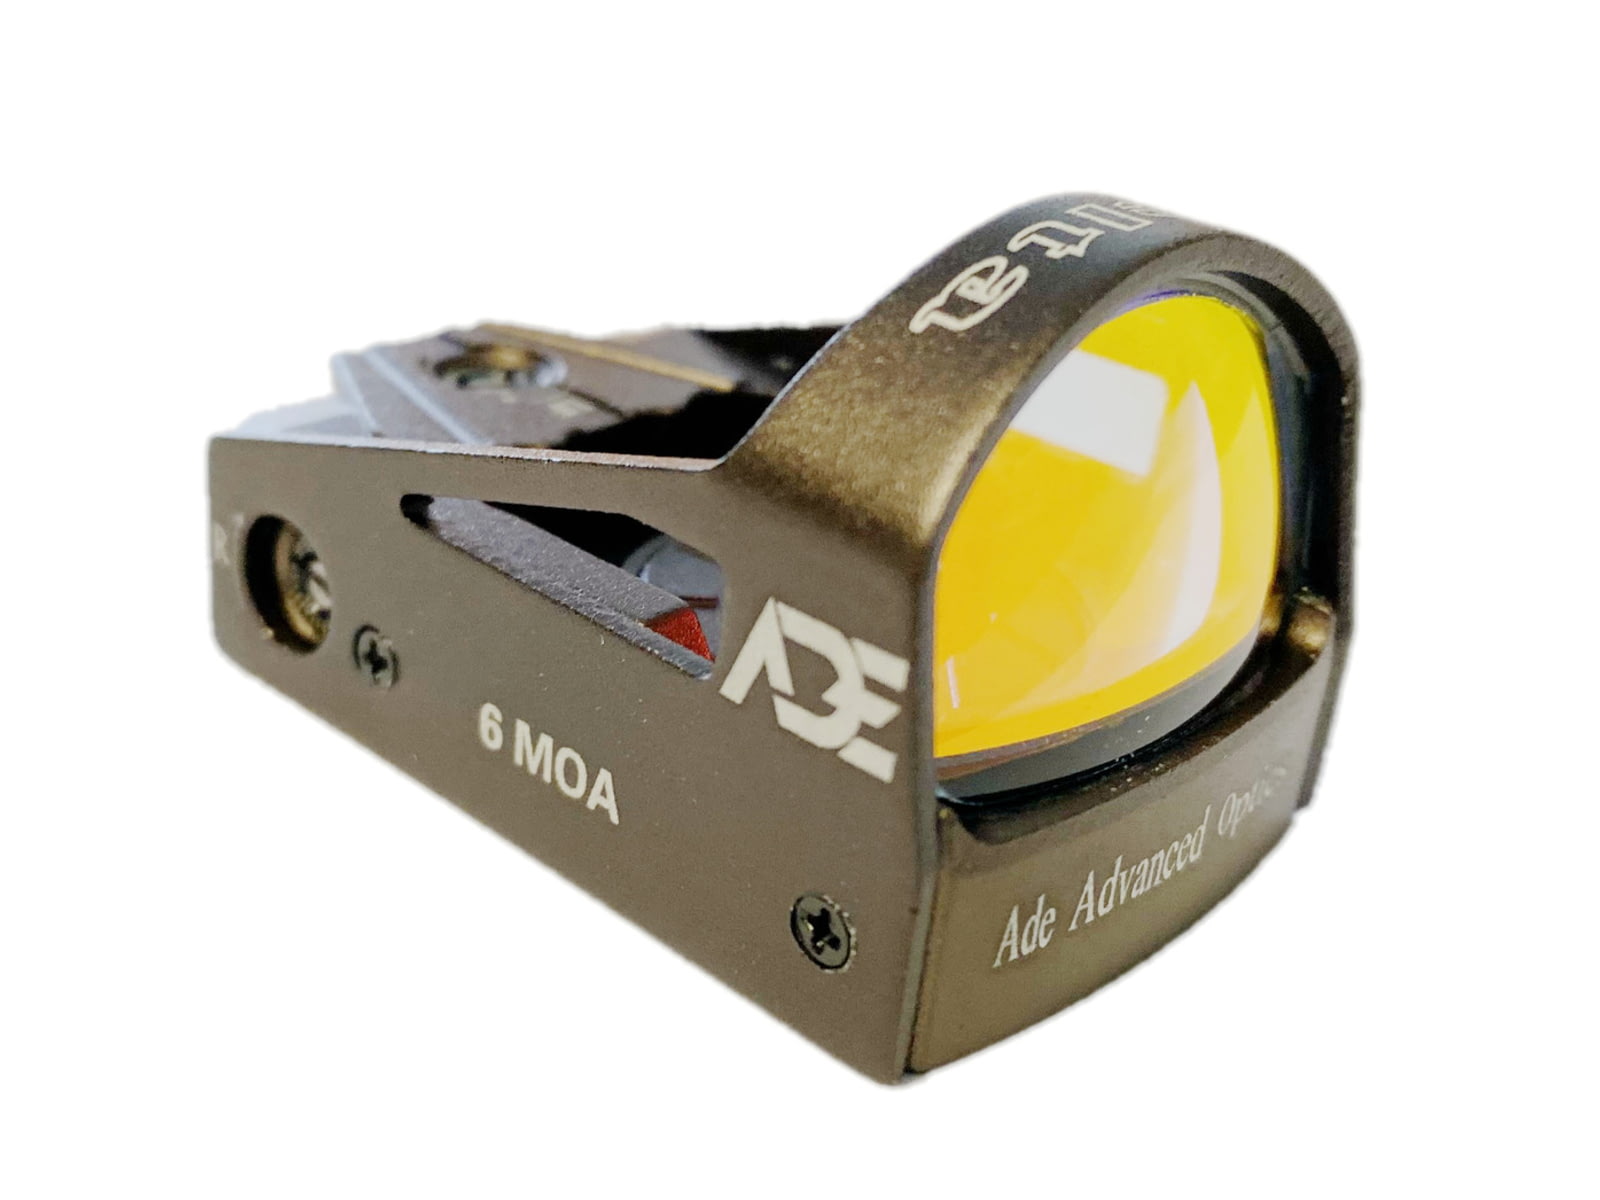 ADE Advanced Optics RD3-012 Delta Mini Reflex Red Dot Micro Sight, Dot Reticle - image 2 of 3